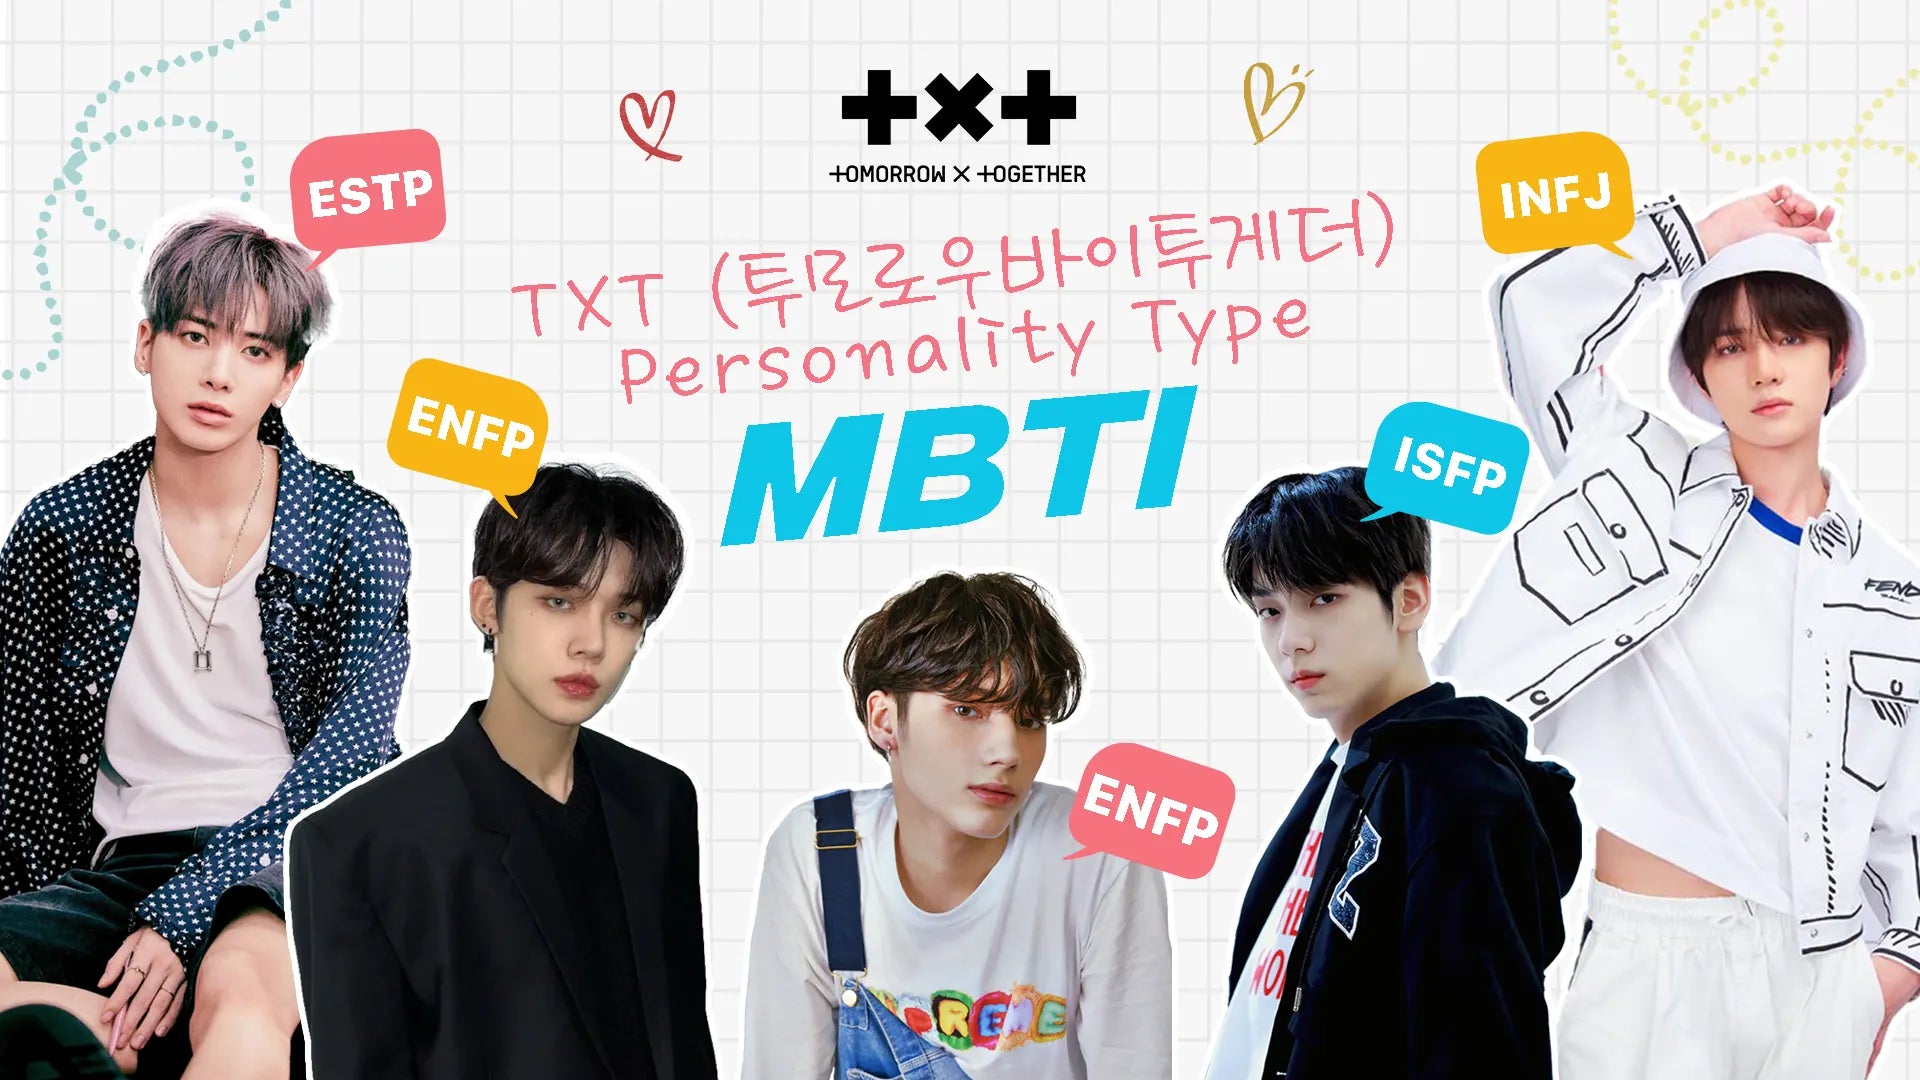 Tou Hanada MBTI Personality Type: ENTJ or ENTP?